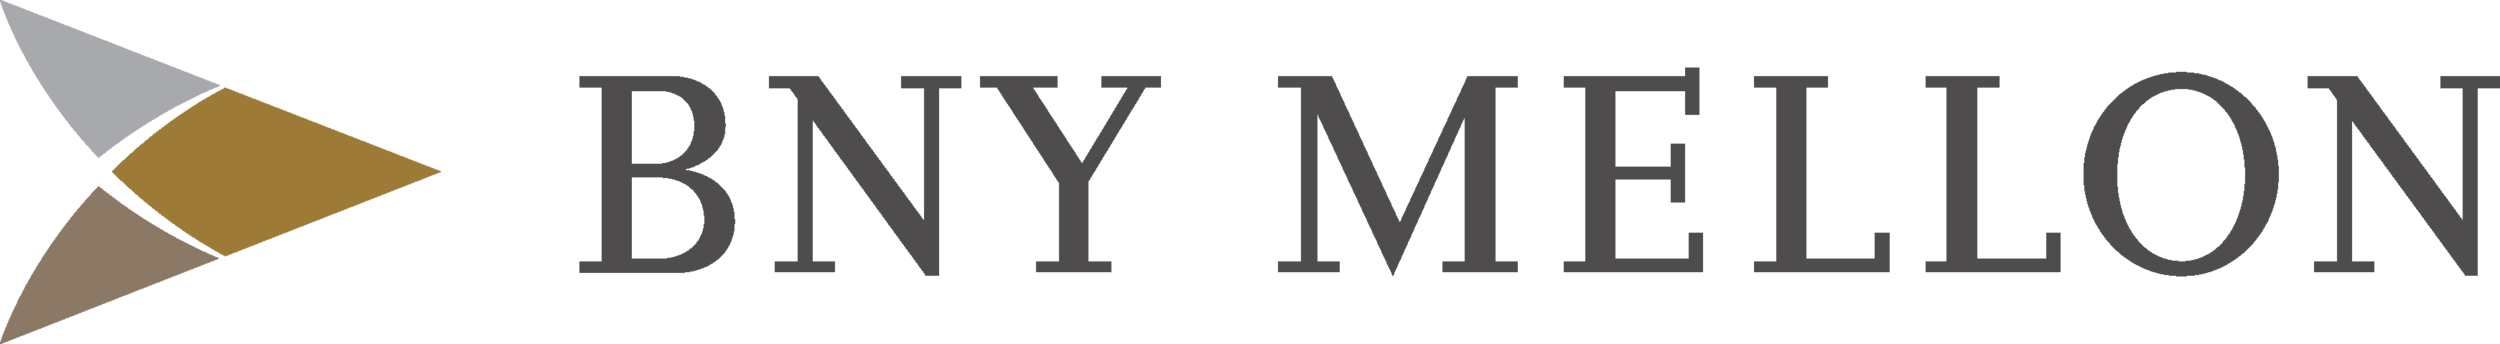 bny-mellon-logo.png